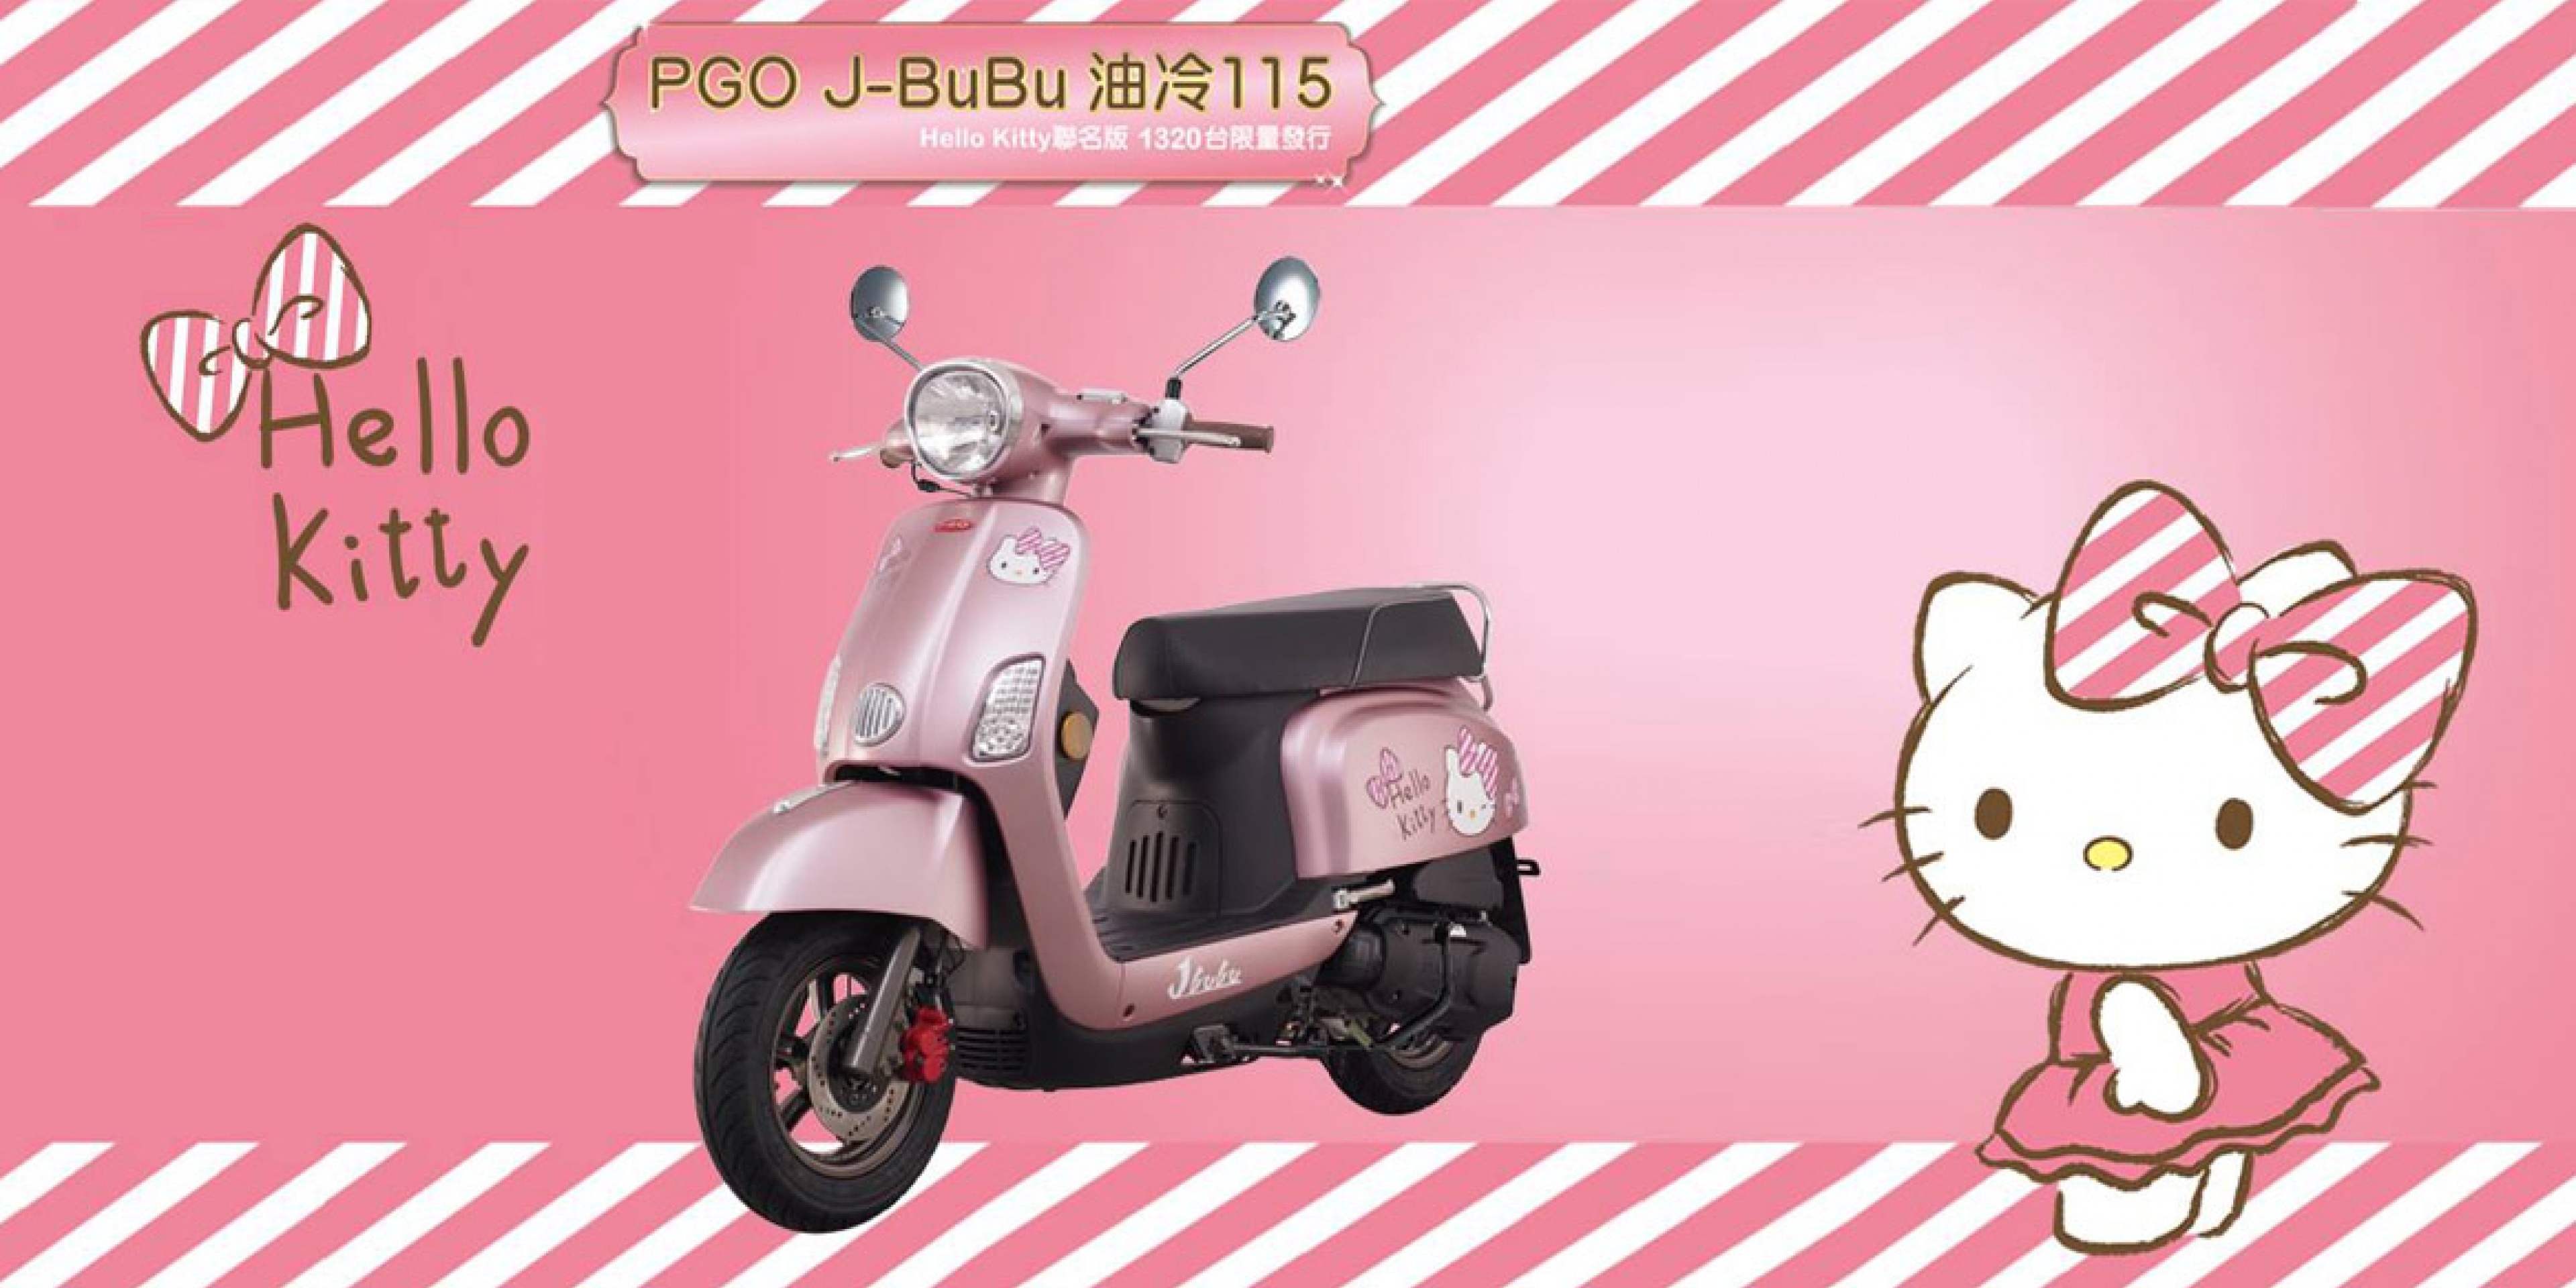 官方新聞稿。質感魅力Hello Kitty J-bubu正式登場